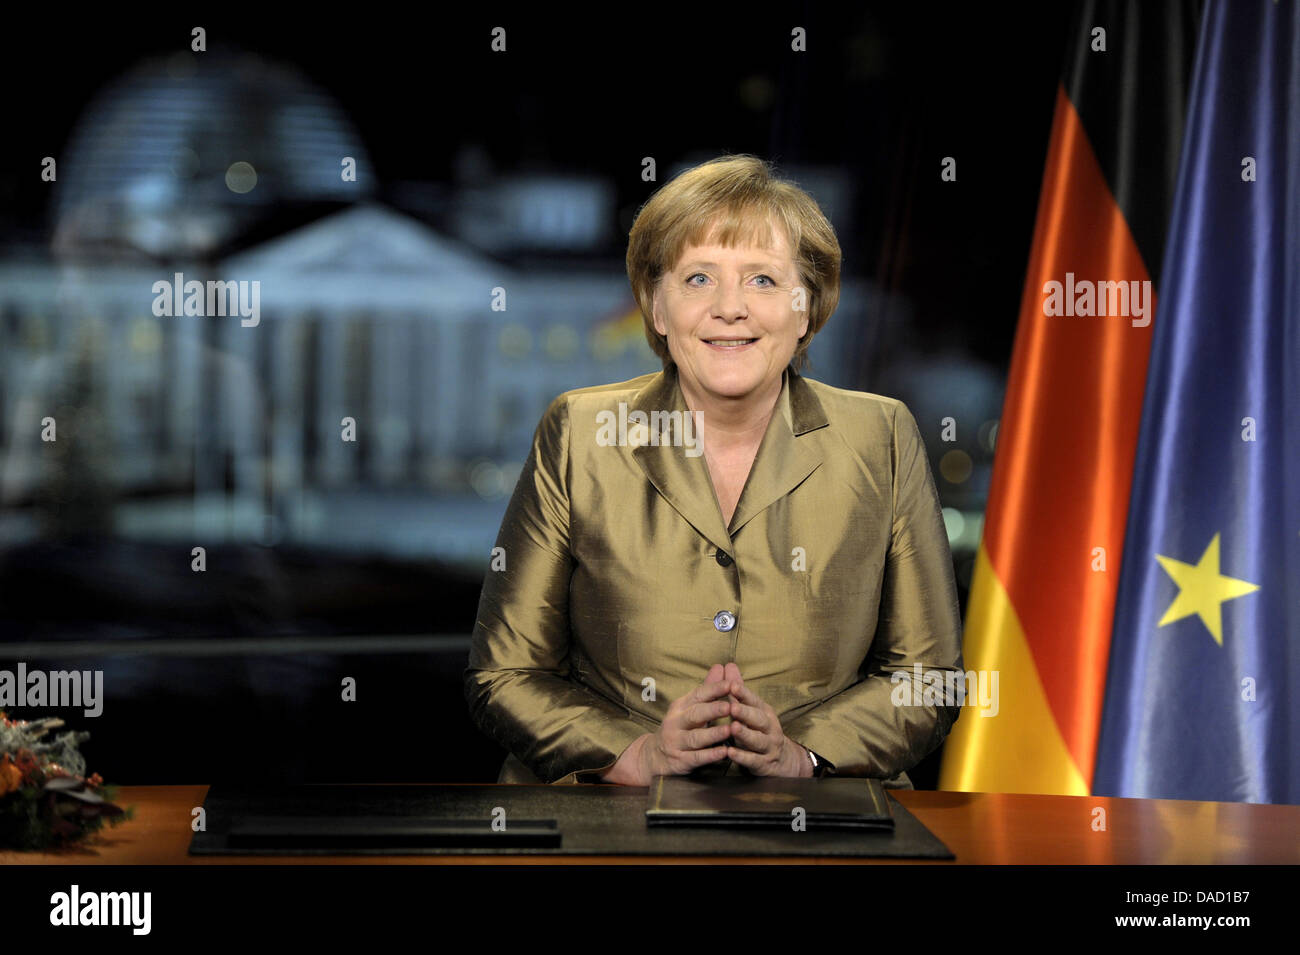 Bundeskanzlerin Angela Merkel posiert für Fotos nach der Aufnahme ihrer jährlichen Neujahrsansprache am Kanzleramt in Berlin, Deutschland, 30. Dezember 2011. Foto: ODD ANDERSEN Stockfoto